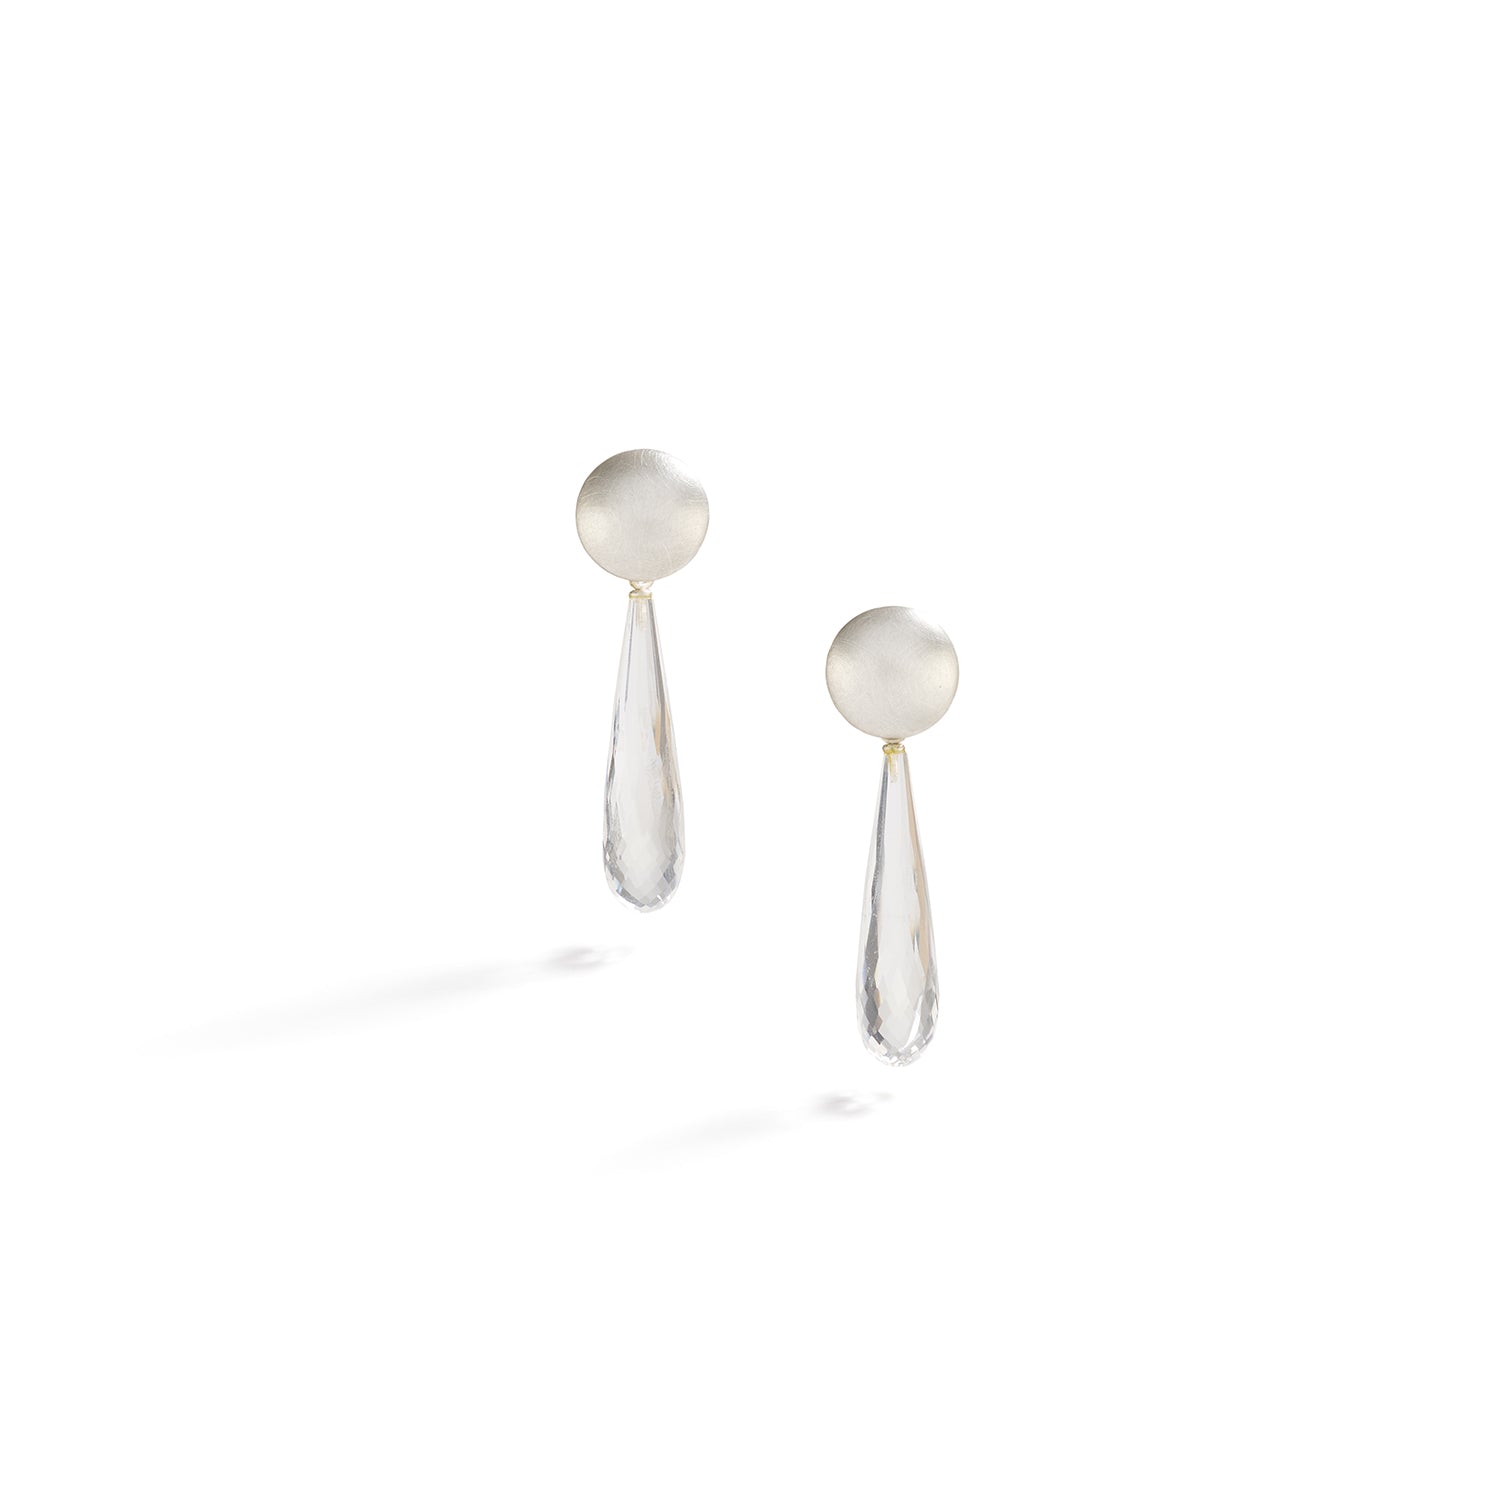 Silver Dome Earrings